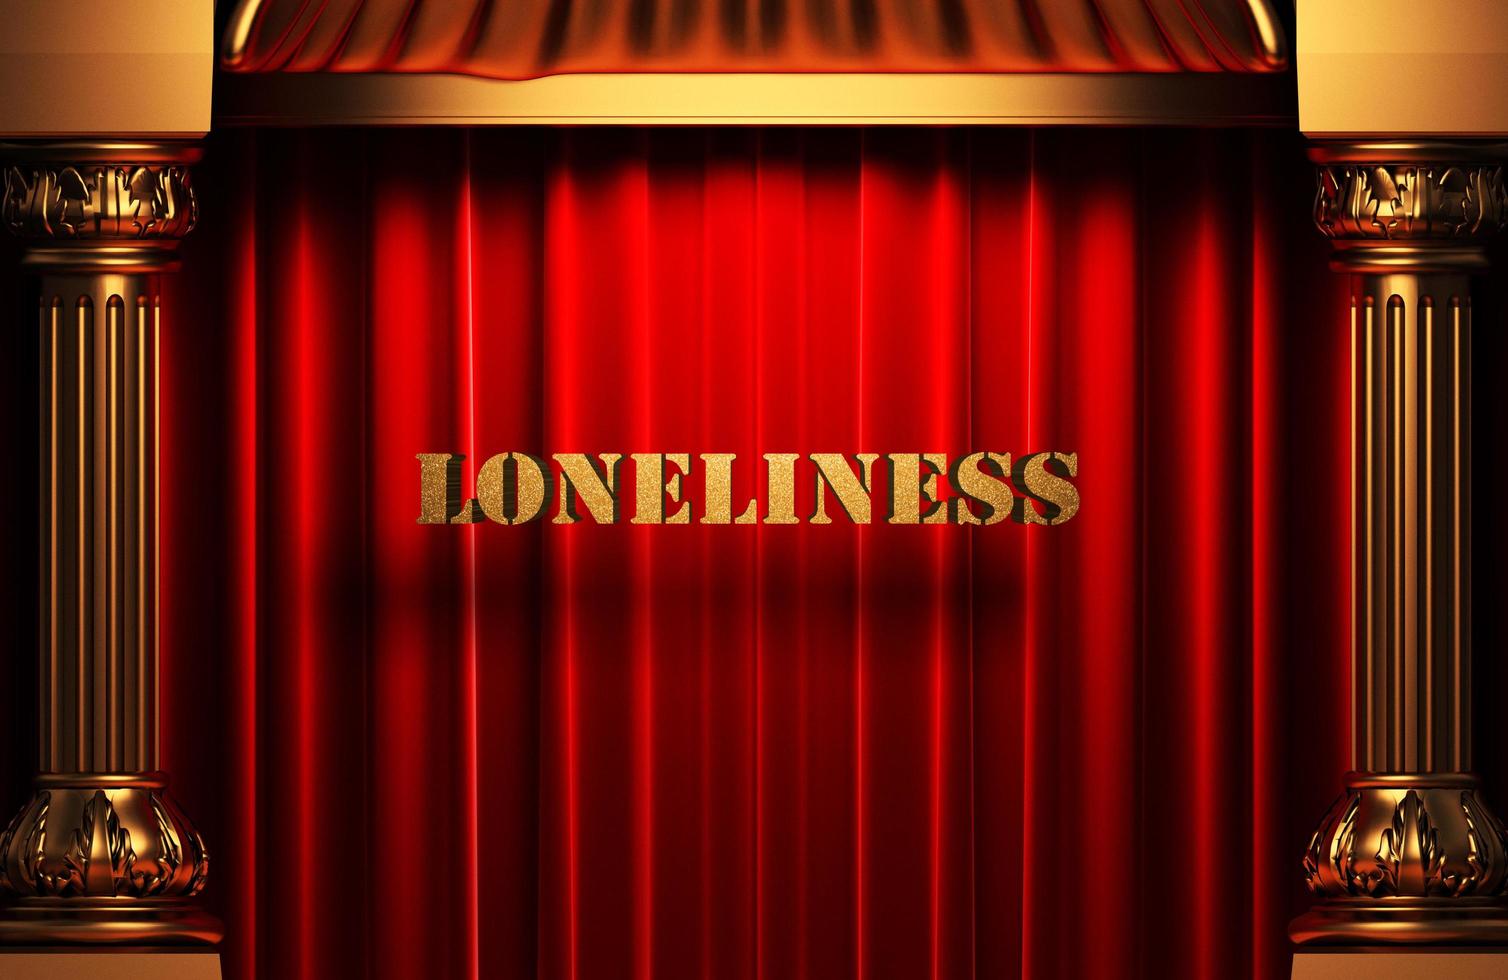 Einsamkeit goldenes Wort auf rotem Vorhang foto